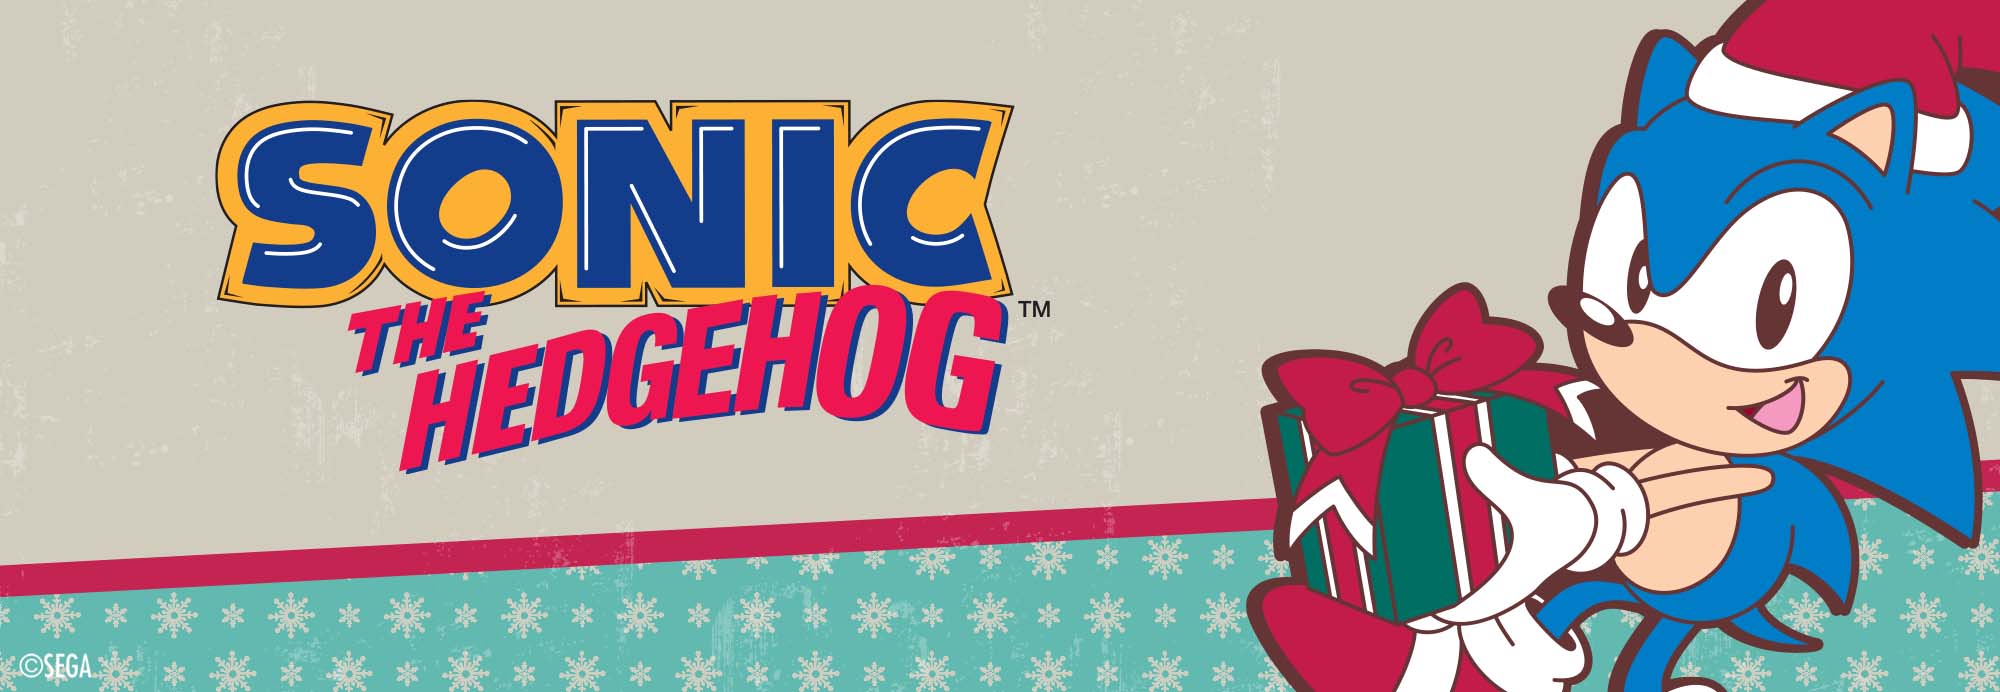 Sonic the Hedgehog holiday desktop banner